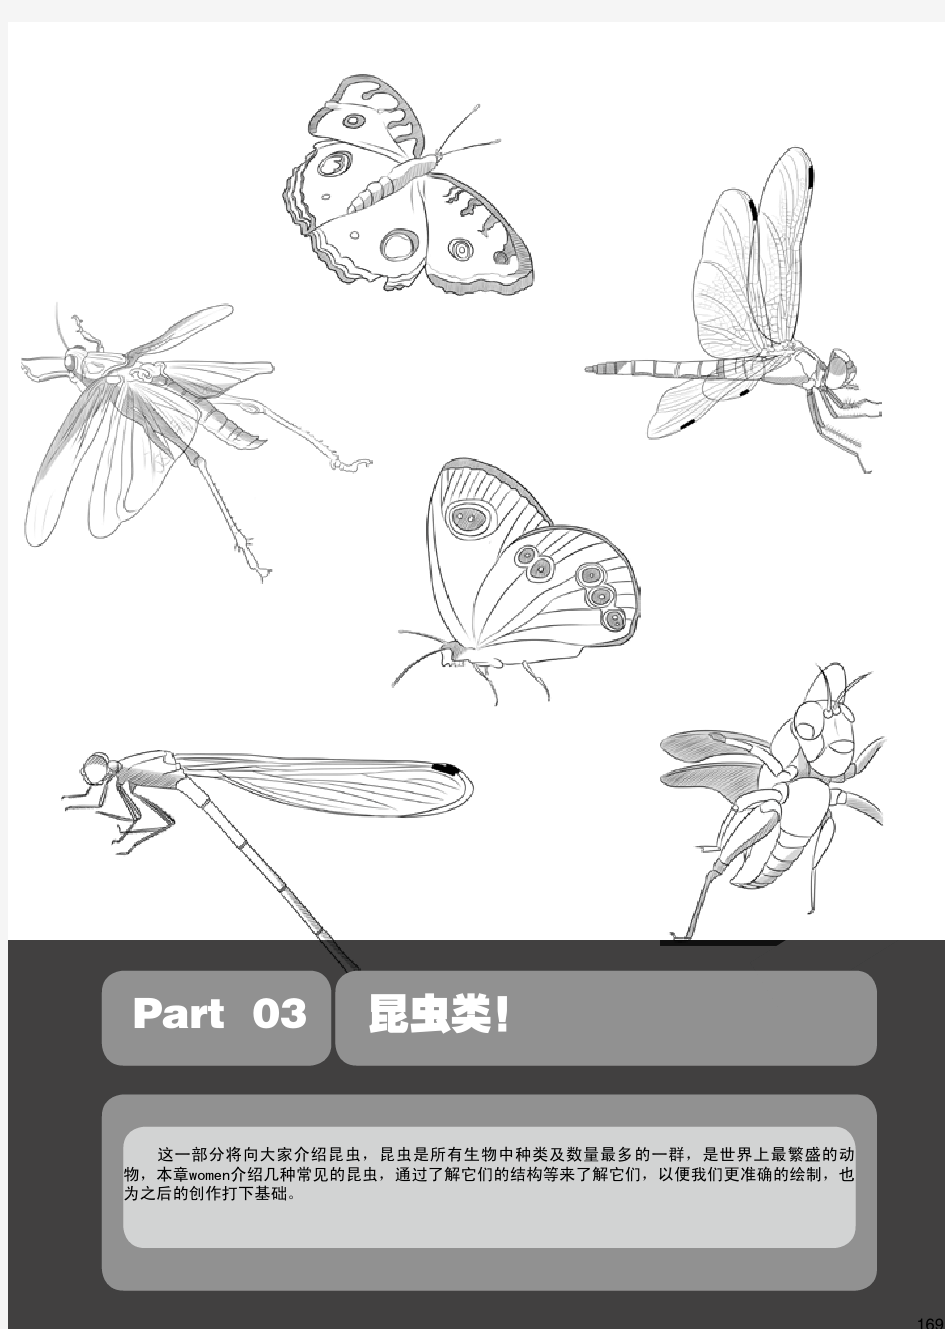 超级漫画绘制技法动物篇第三部分昆虫类蝴蝶第十九章蝴蝶的结构与形态